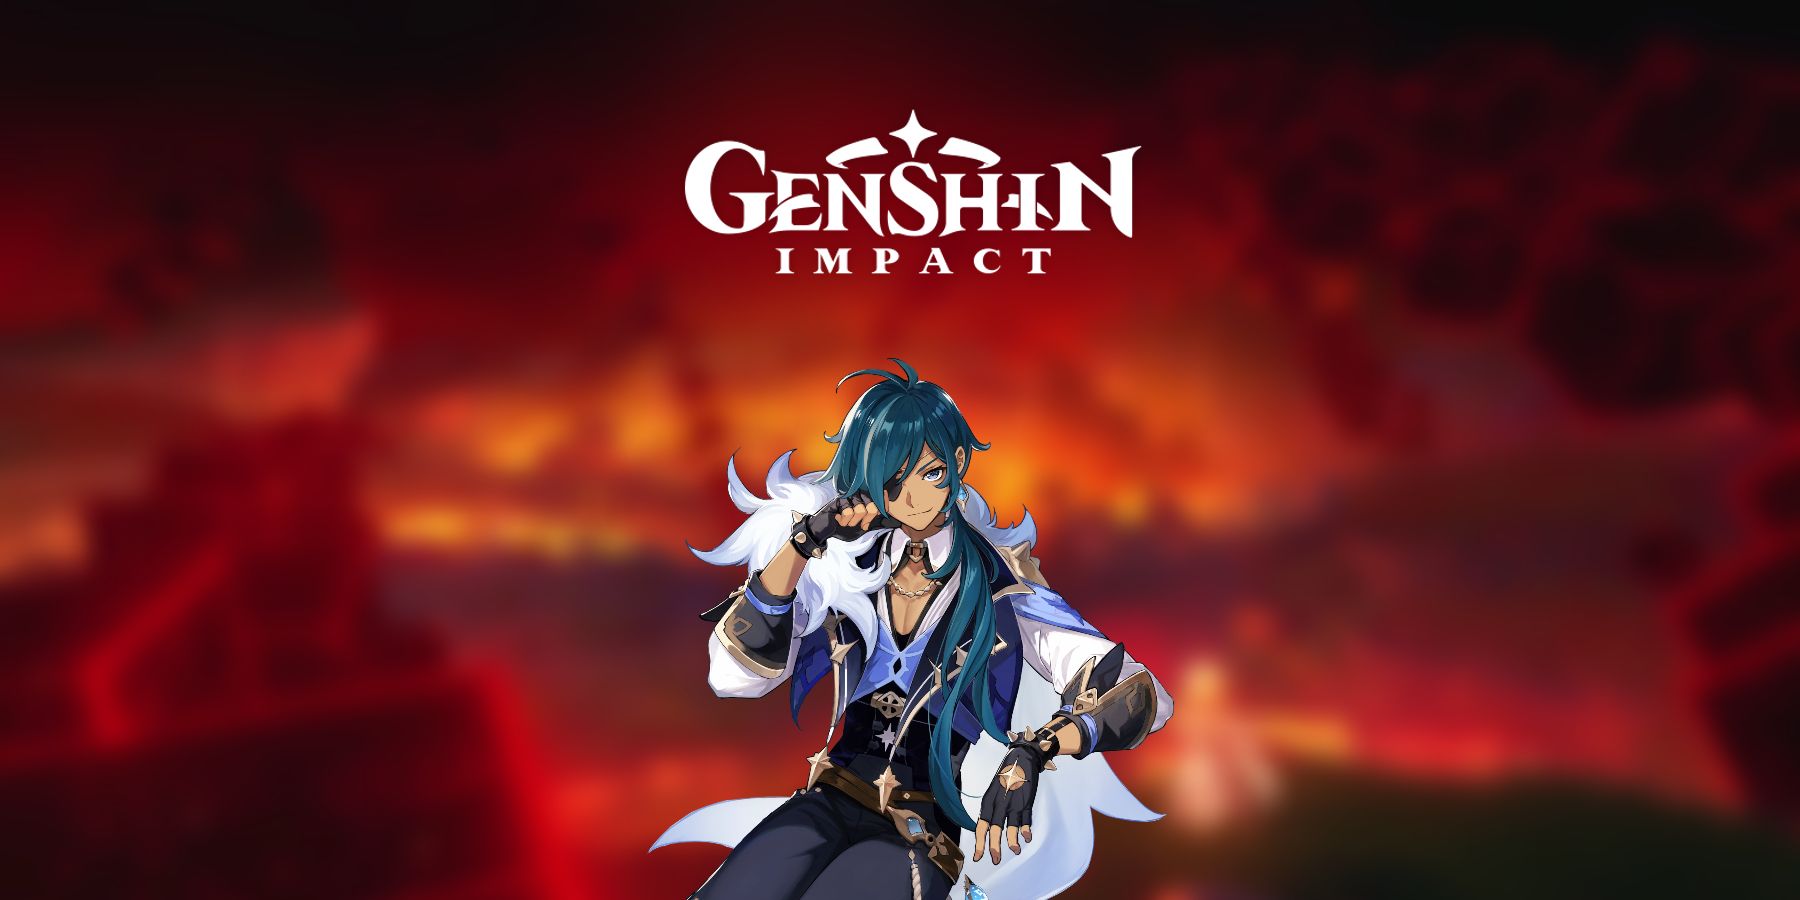 Impacto de Genshin: Kaeya proviene de una tierra sin un dios